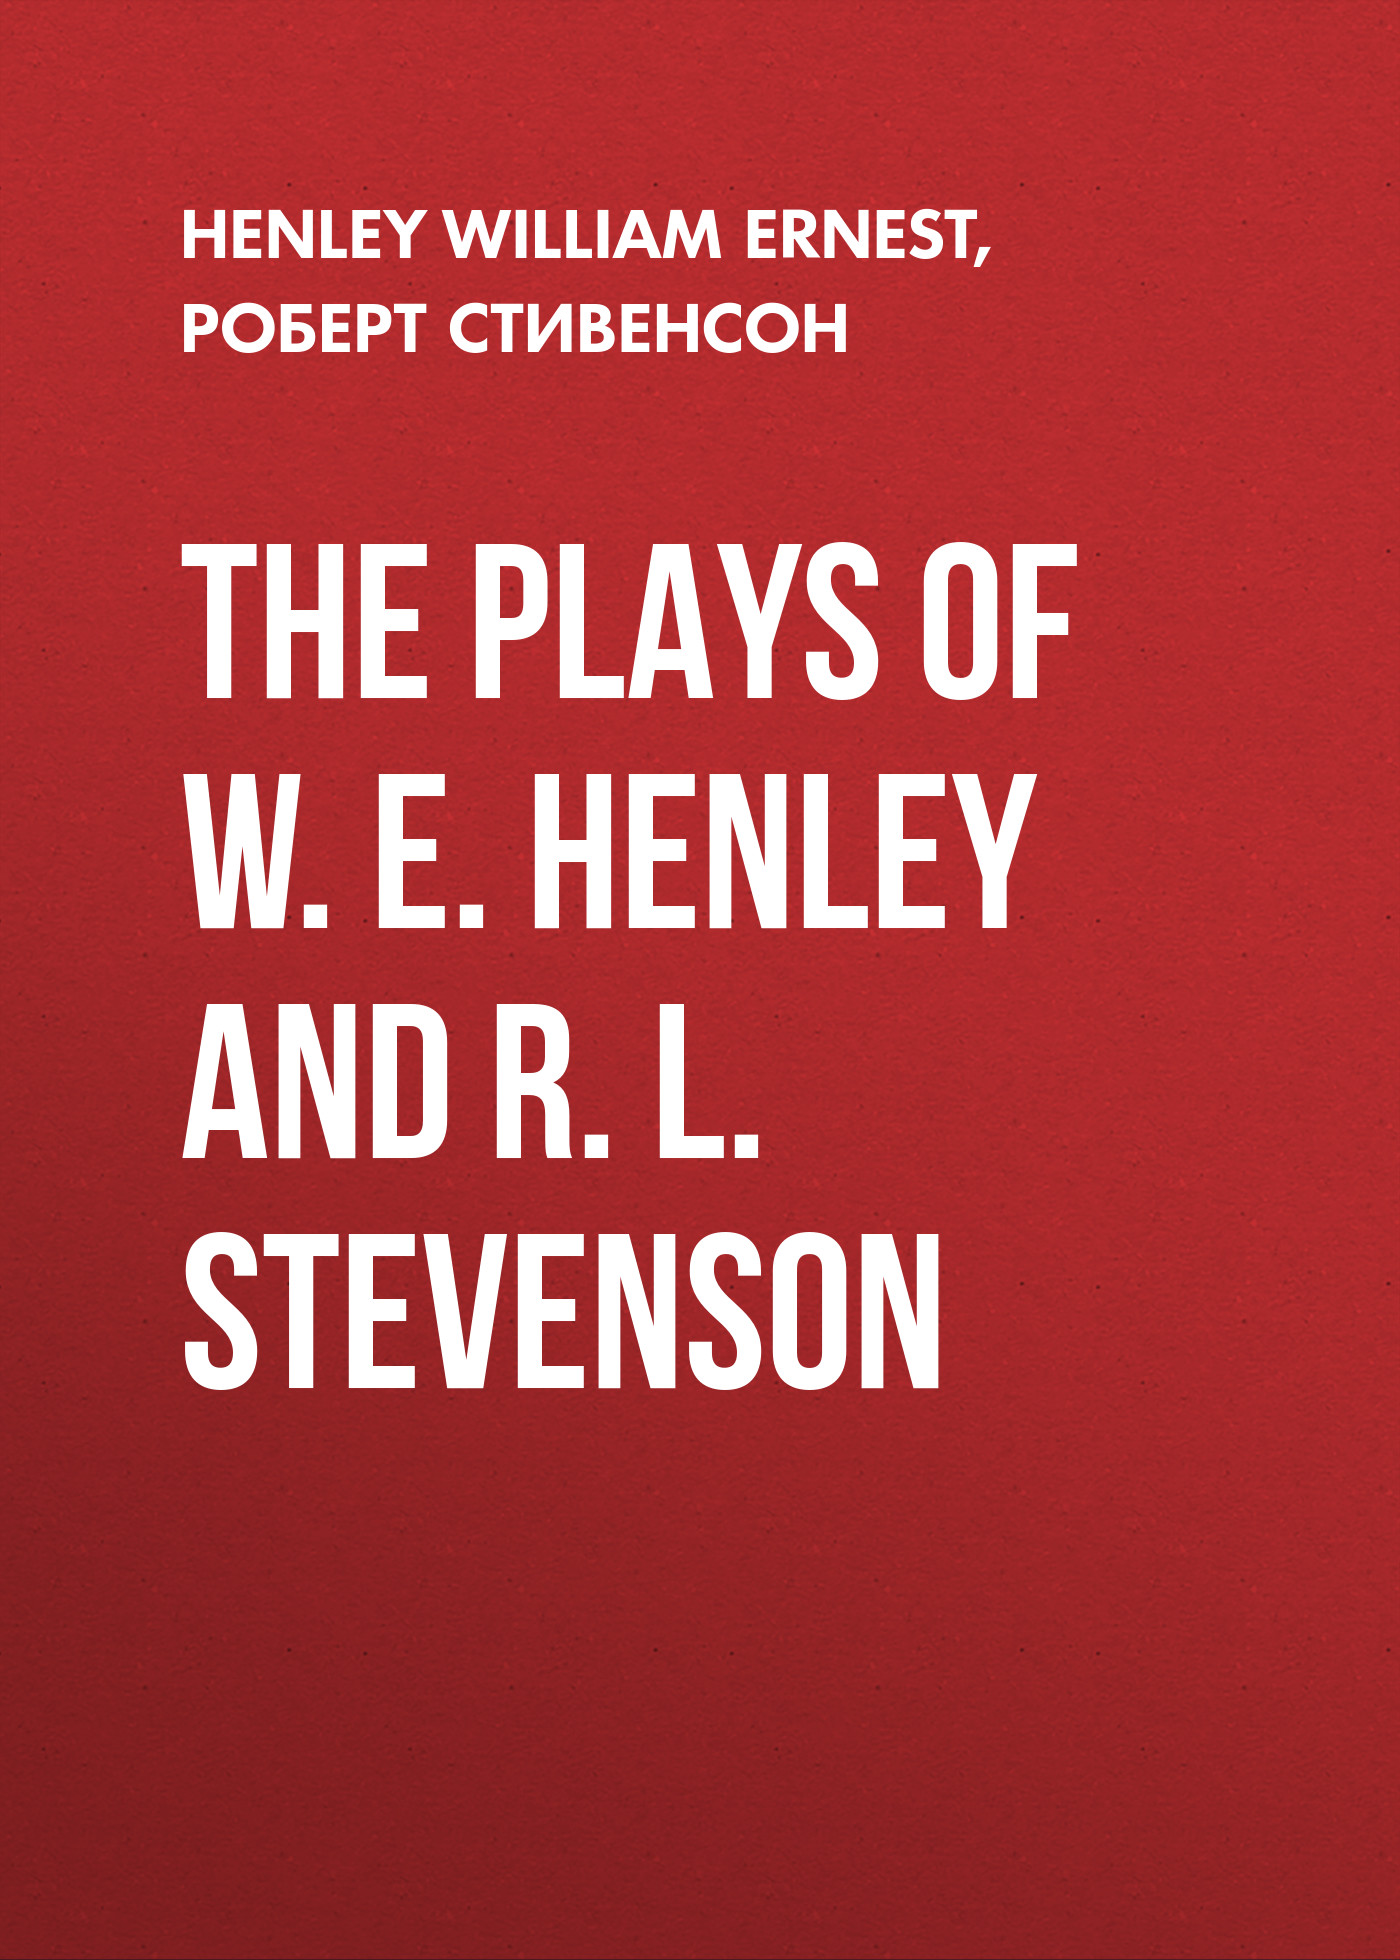 Книга The Plays of W. E. Henley and R. L. Stevenson из серии , созданная Роберт Стивенсон, William Henley, может относится к жанру Литература 19 века, Зарубежная старинная литература, Зарубежная классика, Зарубежная драматургия. Стоимость электронной книги The Plays of W. E. Henley and R. L. Stevenson с идентификатором 25475215 составляет 0 руб.